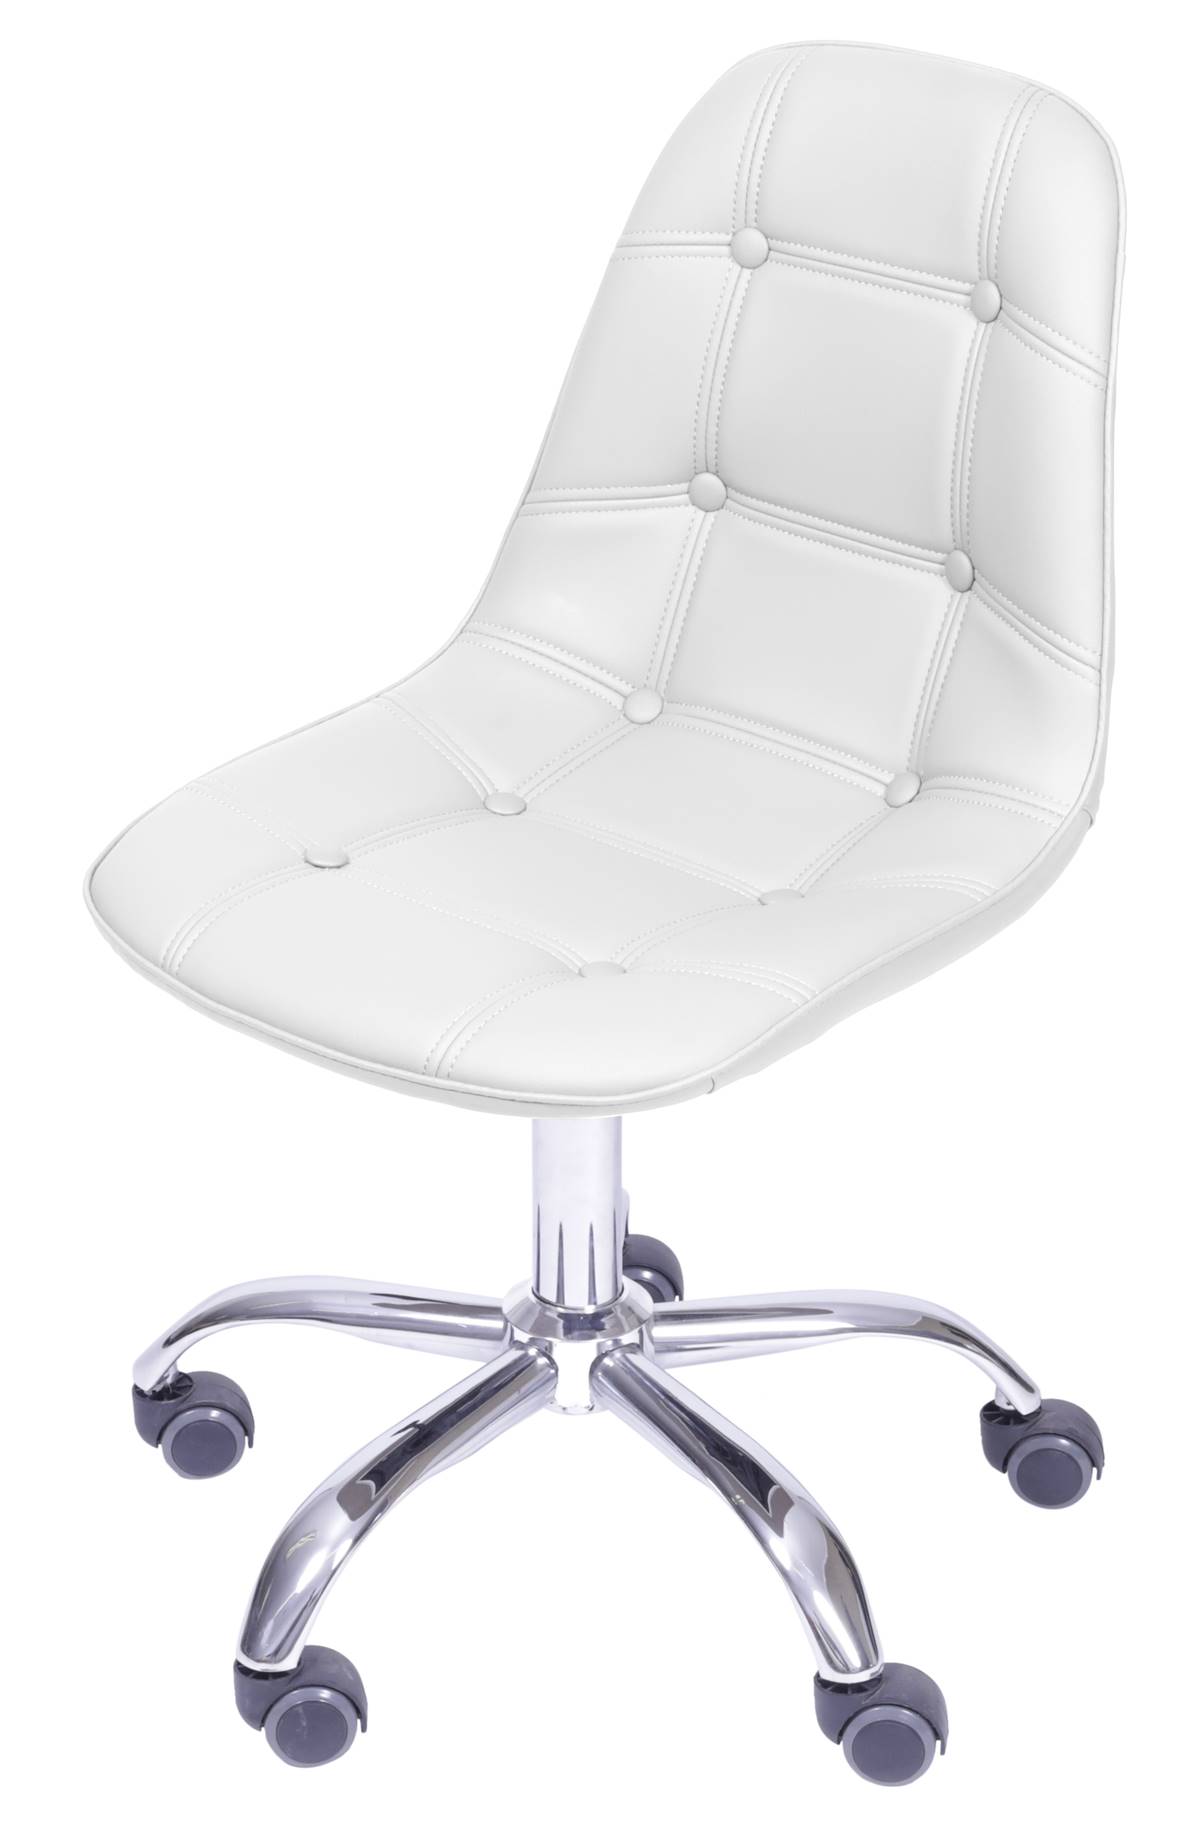 Cadeira Eames Botone Branco com Base Rodizio - 54684